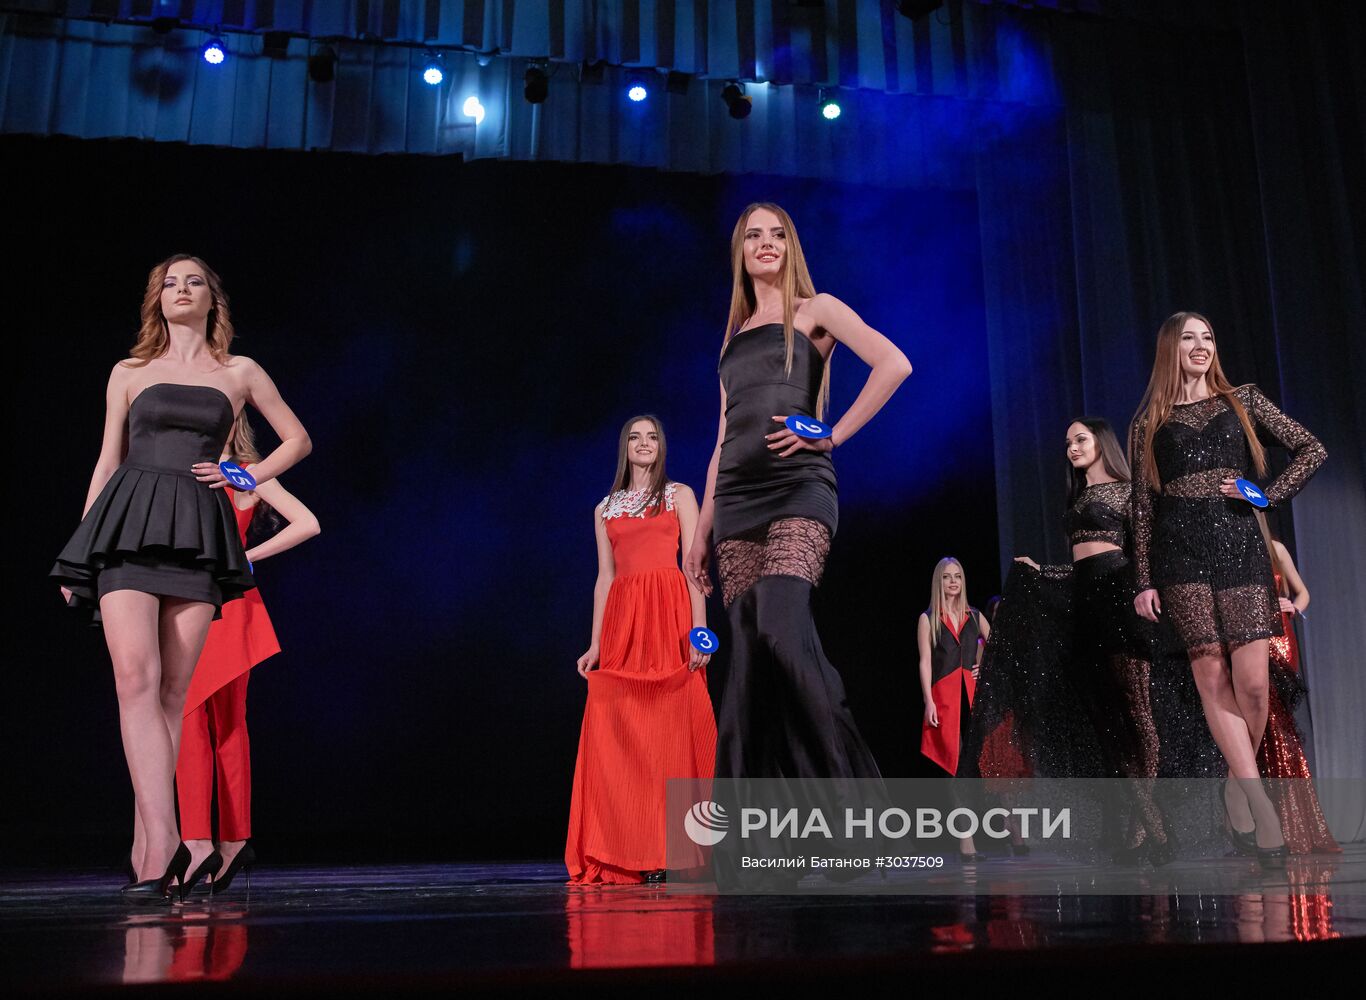 Конкурс красоты "Севастопольская красавица" в Крыму